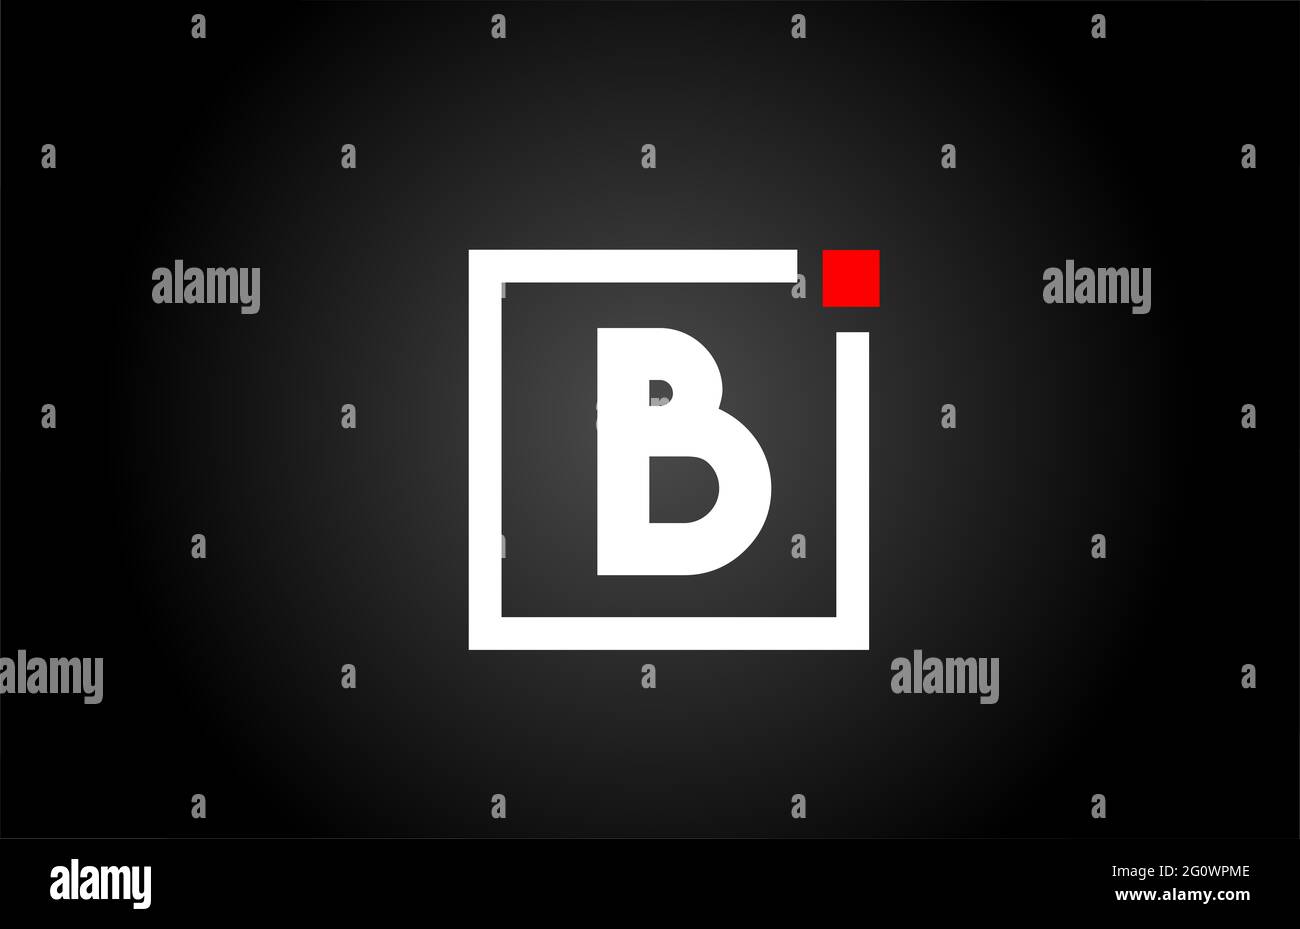 Logo con l'icona della lettera B in bianco e nero. Design aziendale e aziendale con punto quadrato e rosso. Modello di identità aziendale creativa Foto Stock